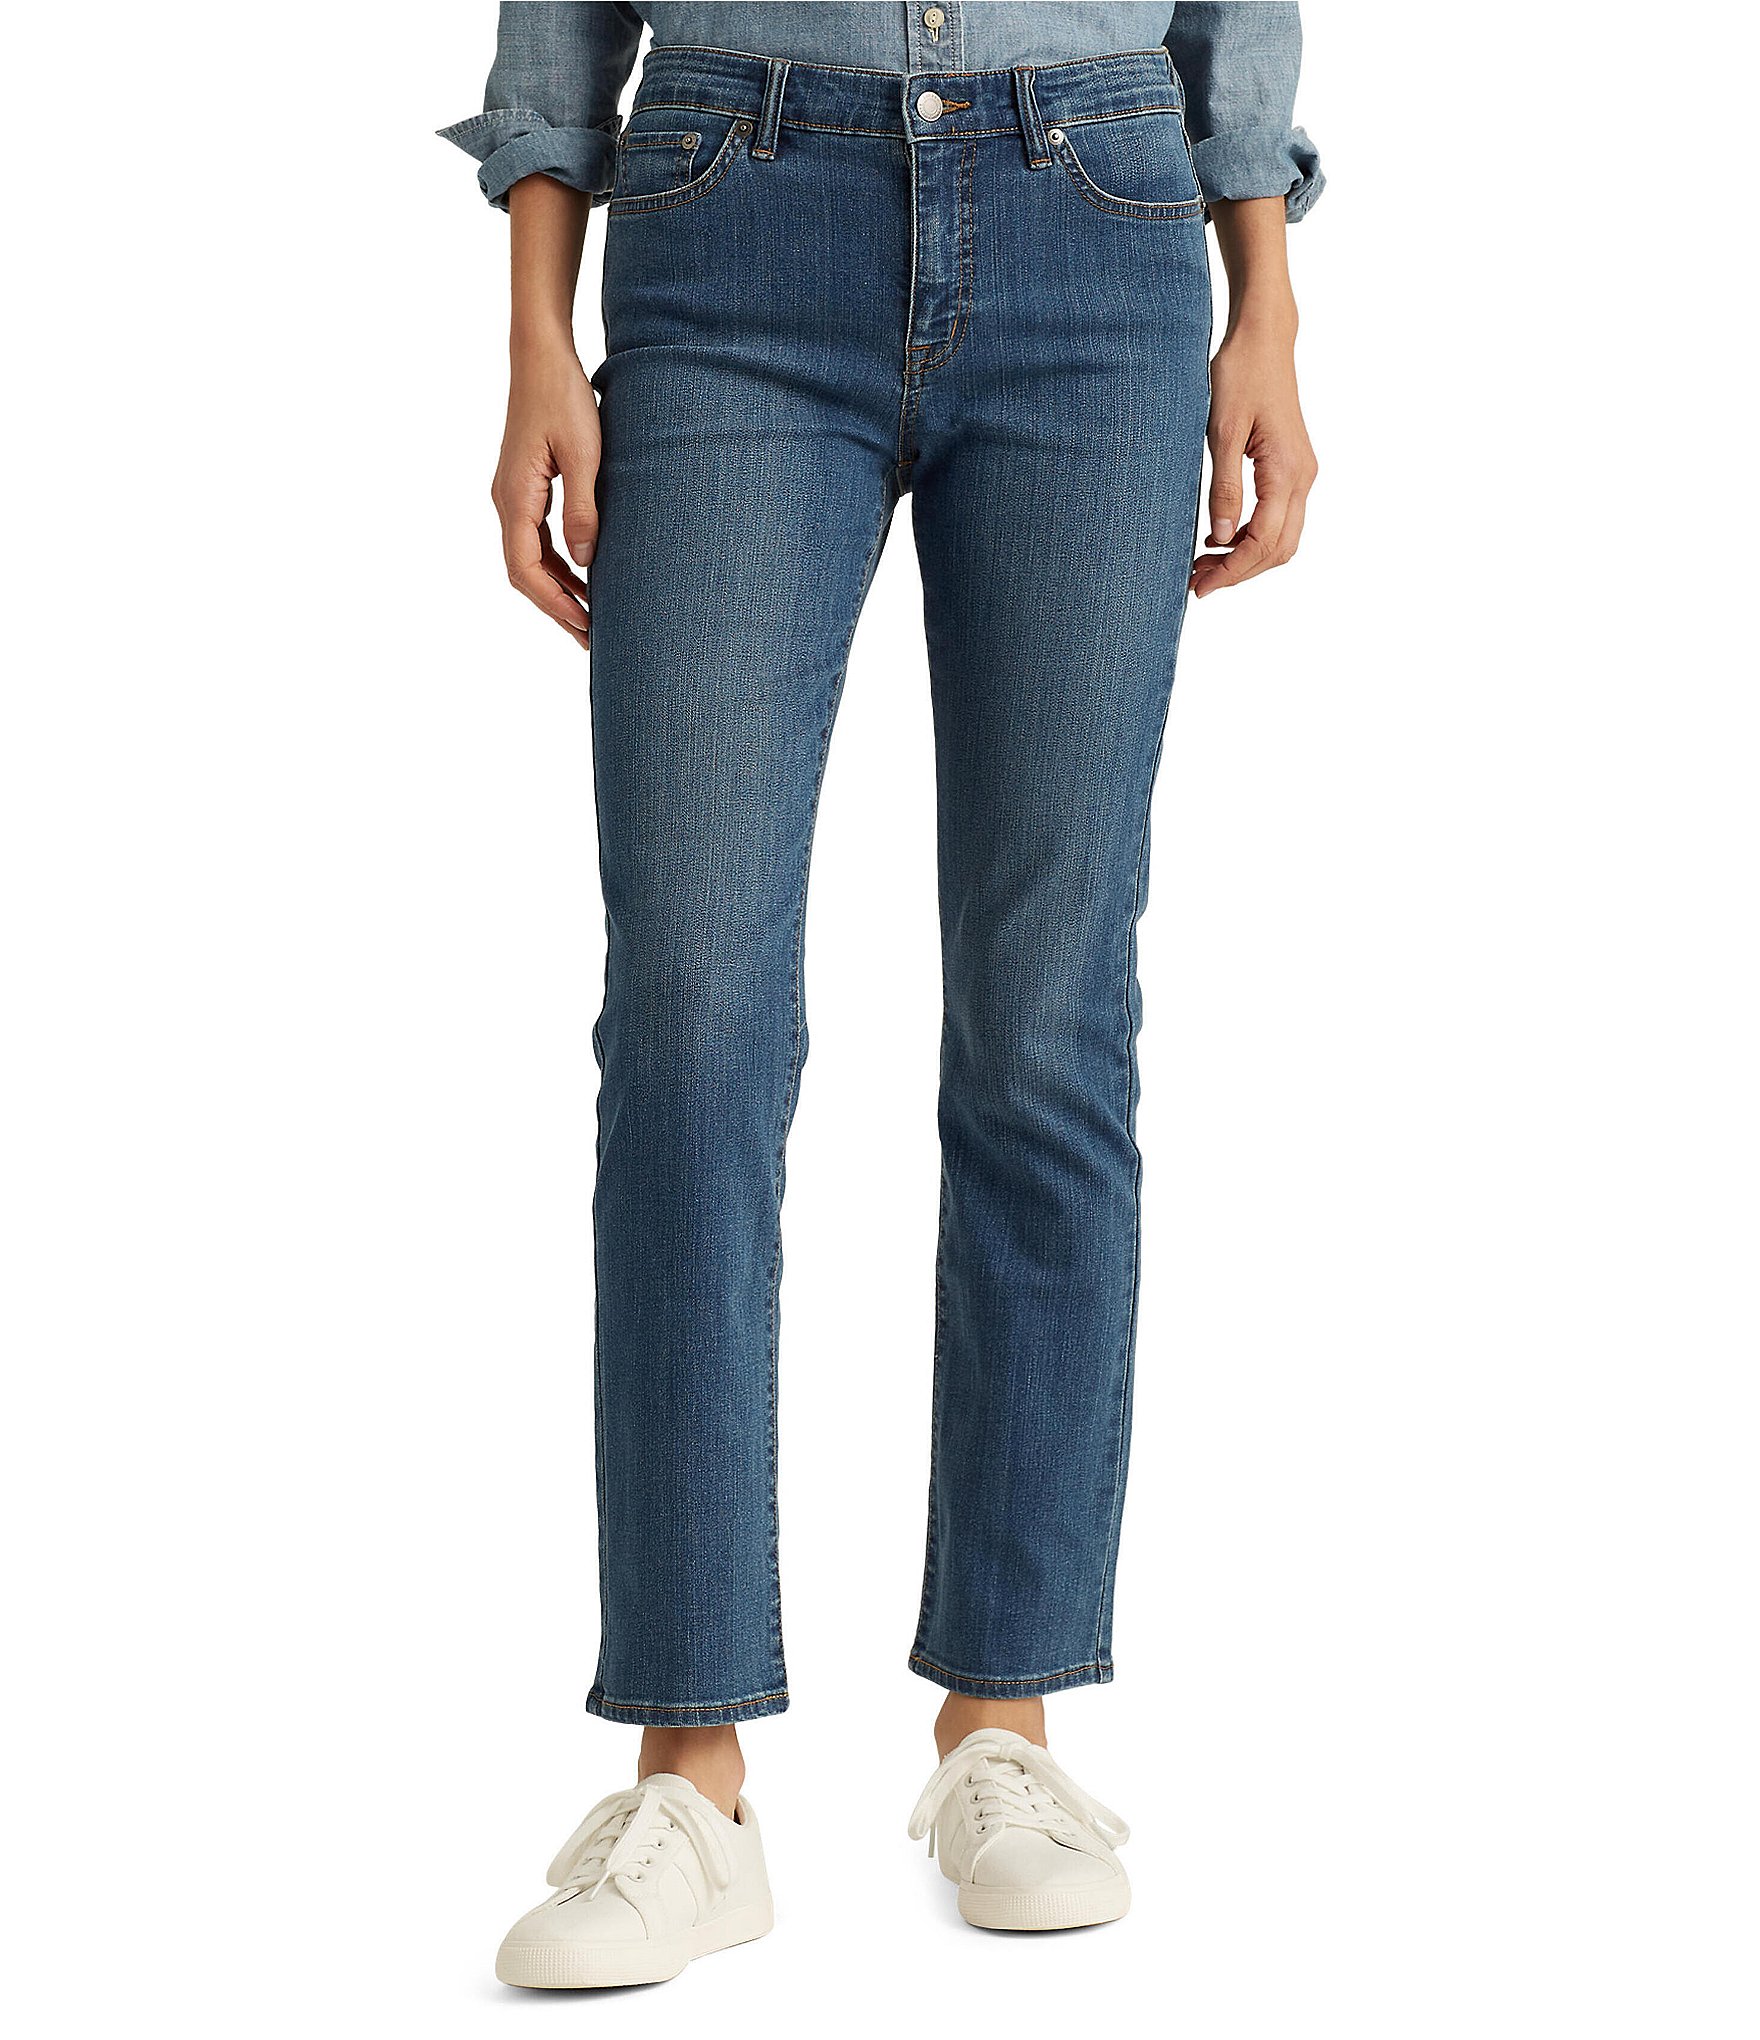 Lauren Ralph Lauren Petite Mid-Rise Straight Jean, Petite & Petite Short Lengths - Ocean Blue Wash Denim - Size 12p